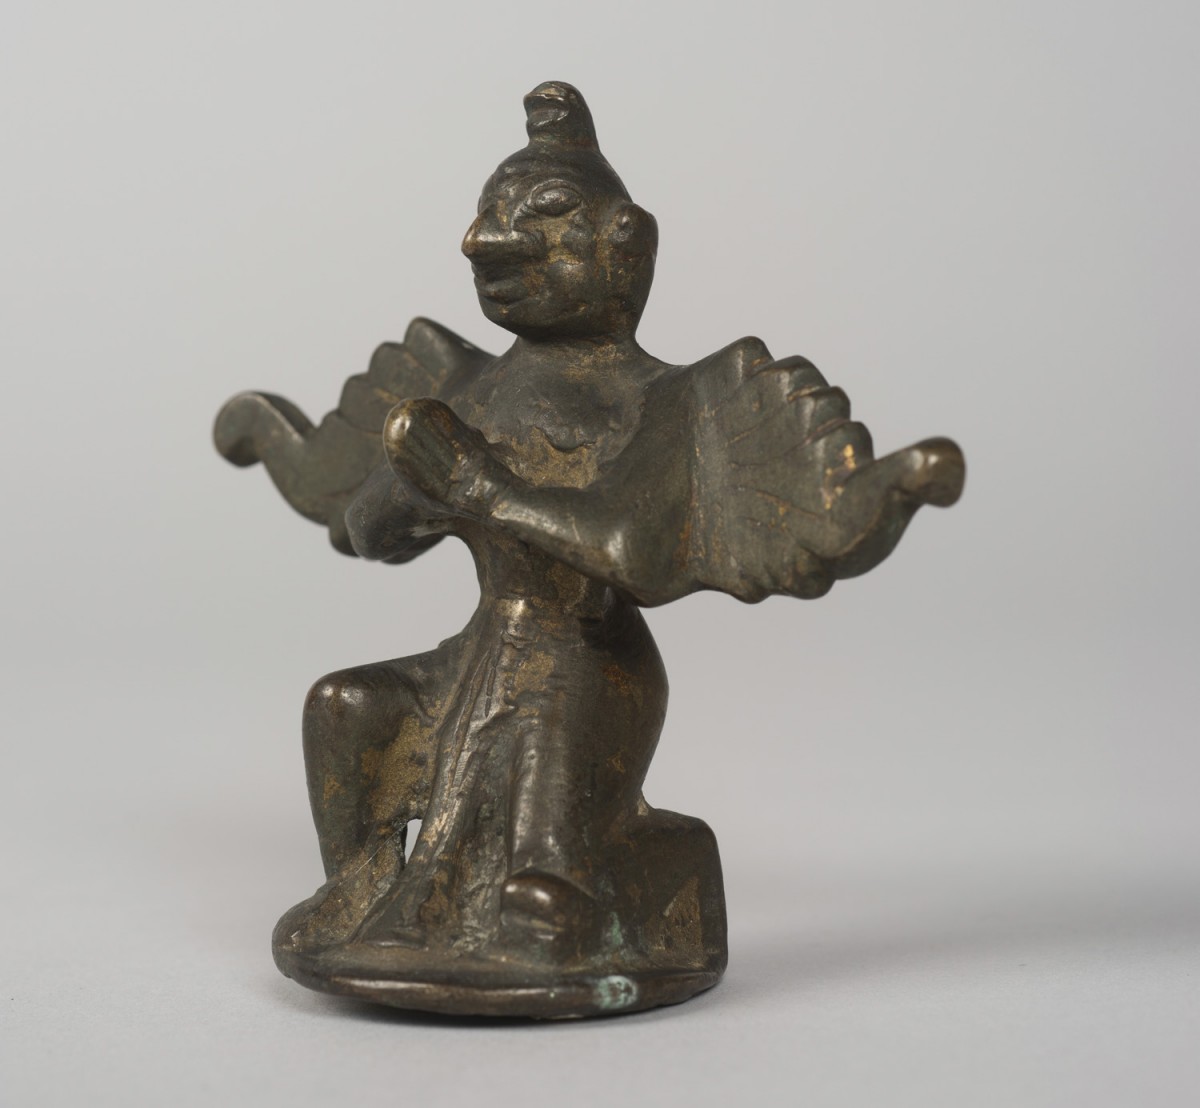 Garuda, the Vahana of Vishnu